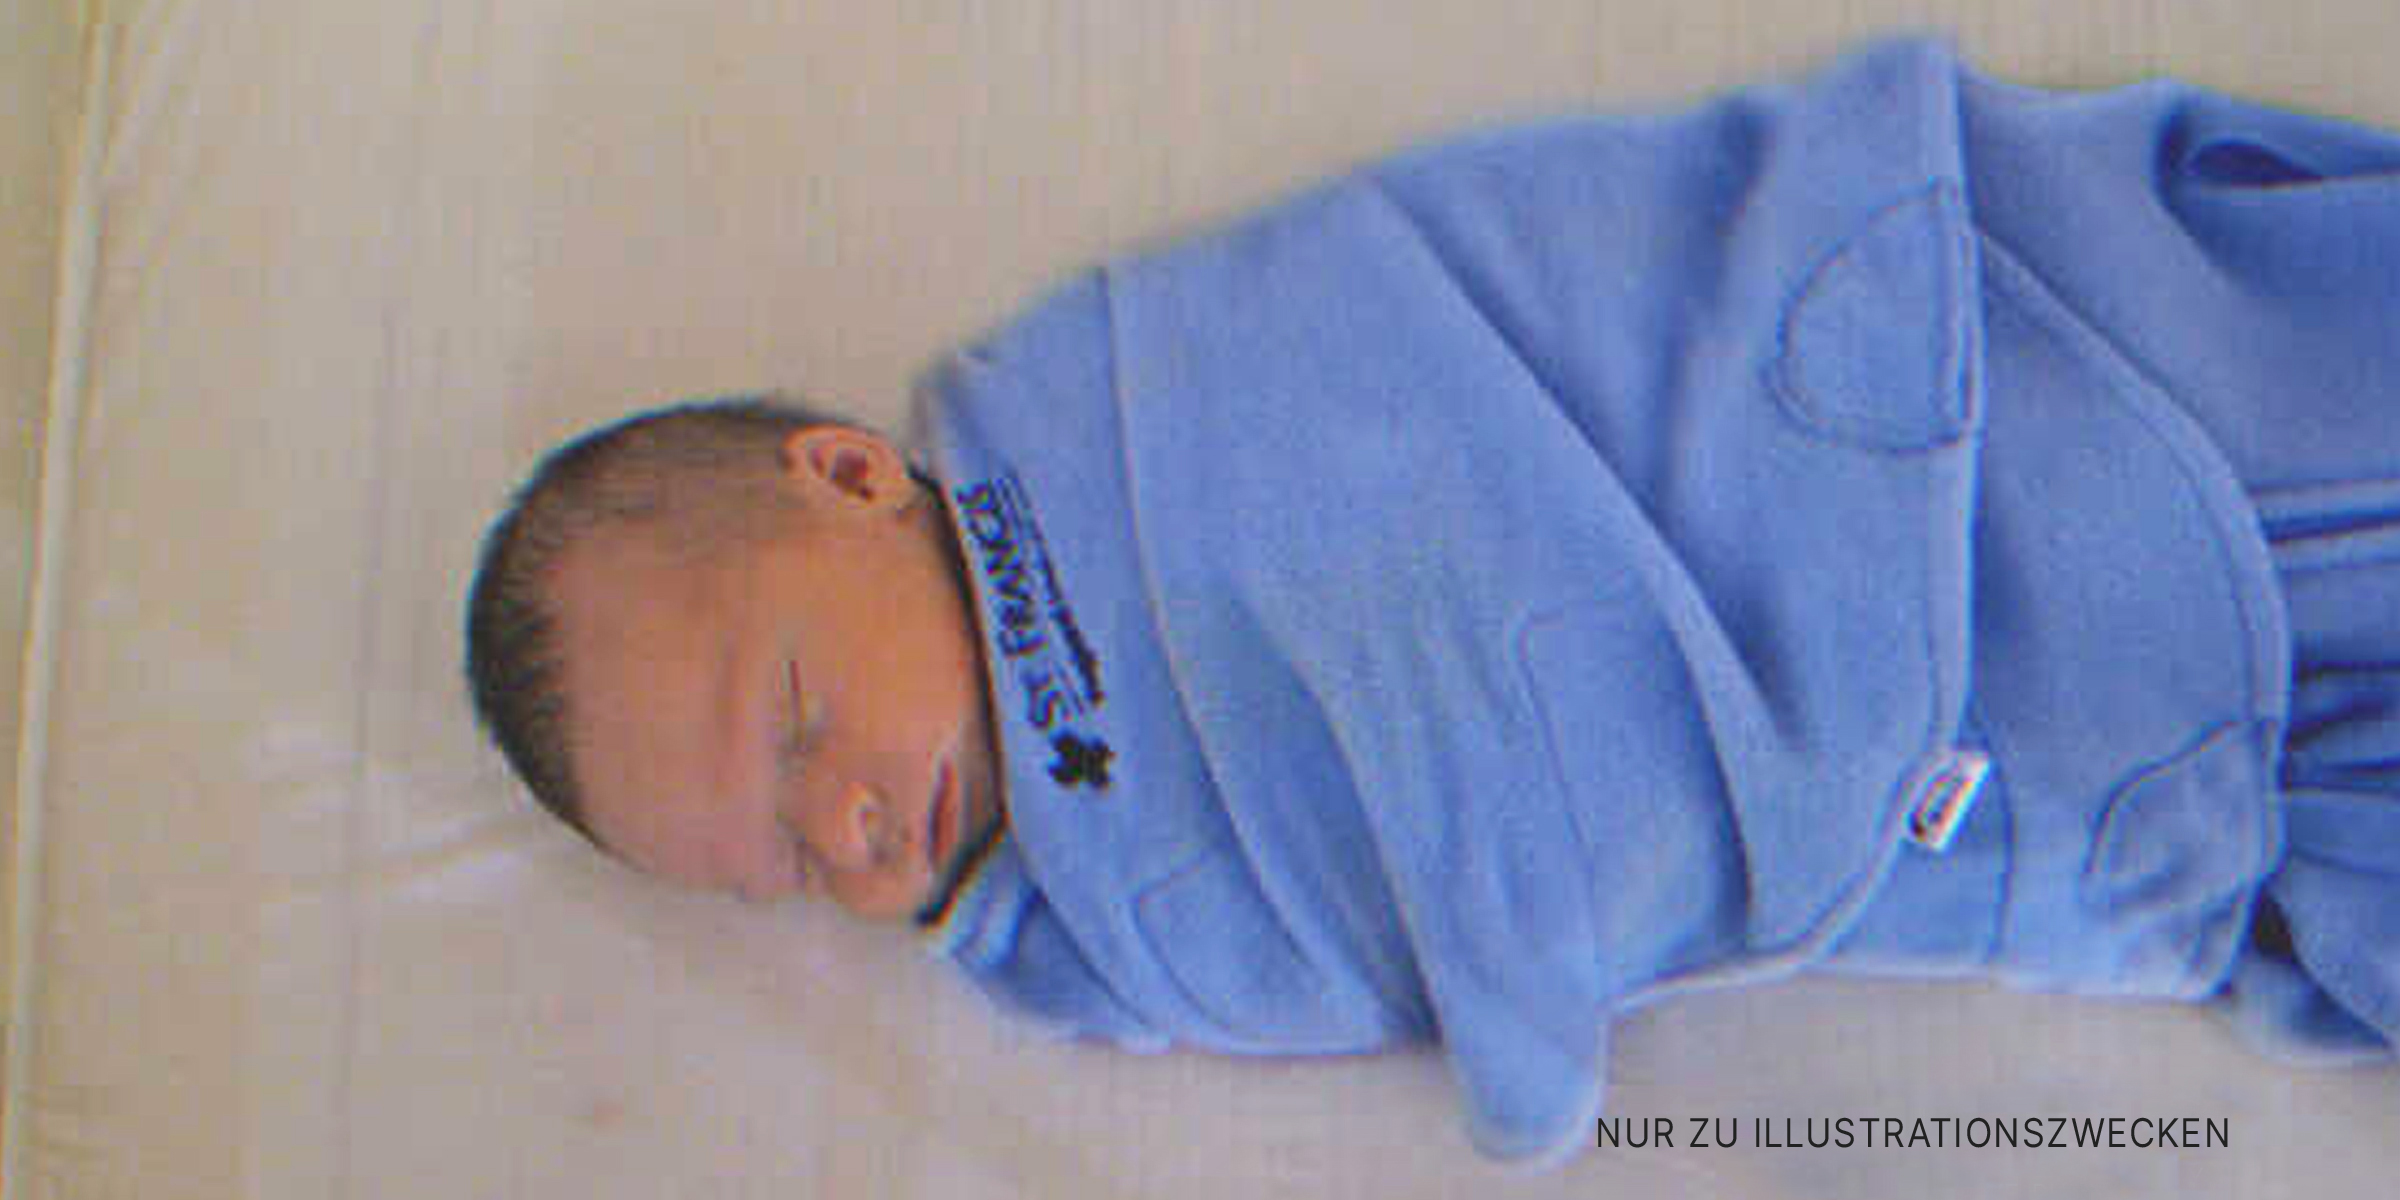 Ein in ein blaues Tuch gewickeltes Baby | Quelle: Flickr/EtanSivad (CC BY-SA 2.0)